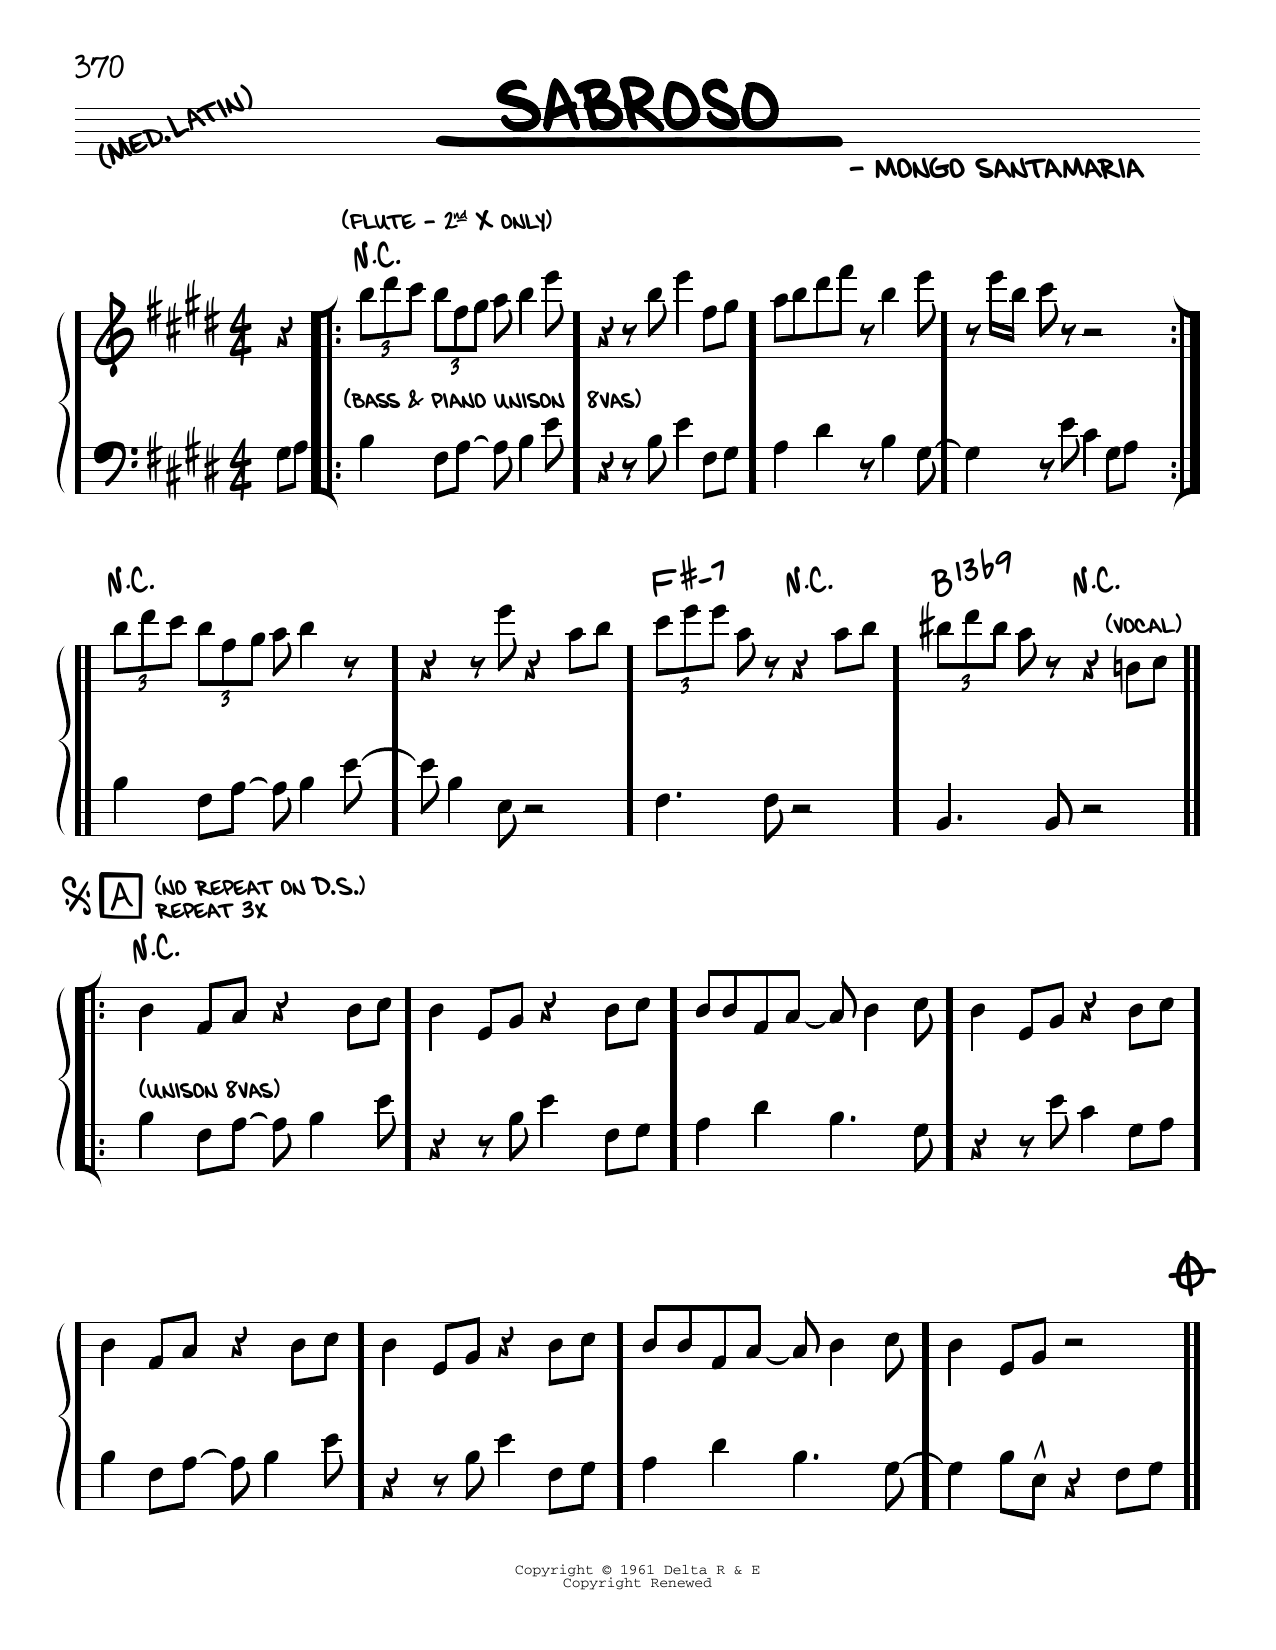 Mongo Santamaria Sabroso Sheet Music Notes & Chords for Real Book – Melody & Chords - Download or Print PDF